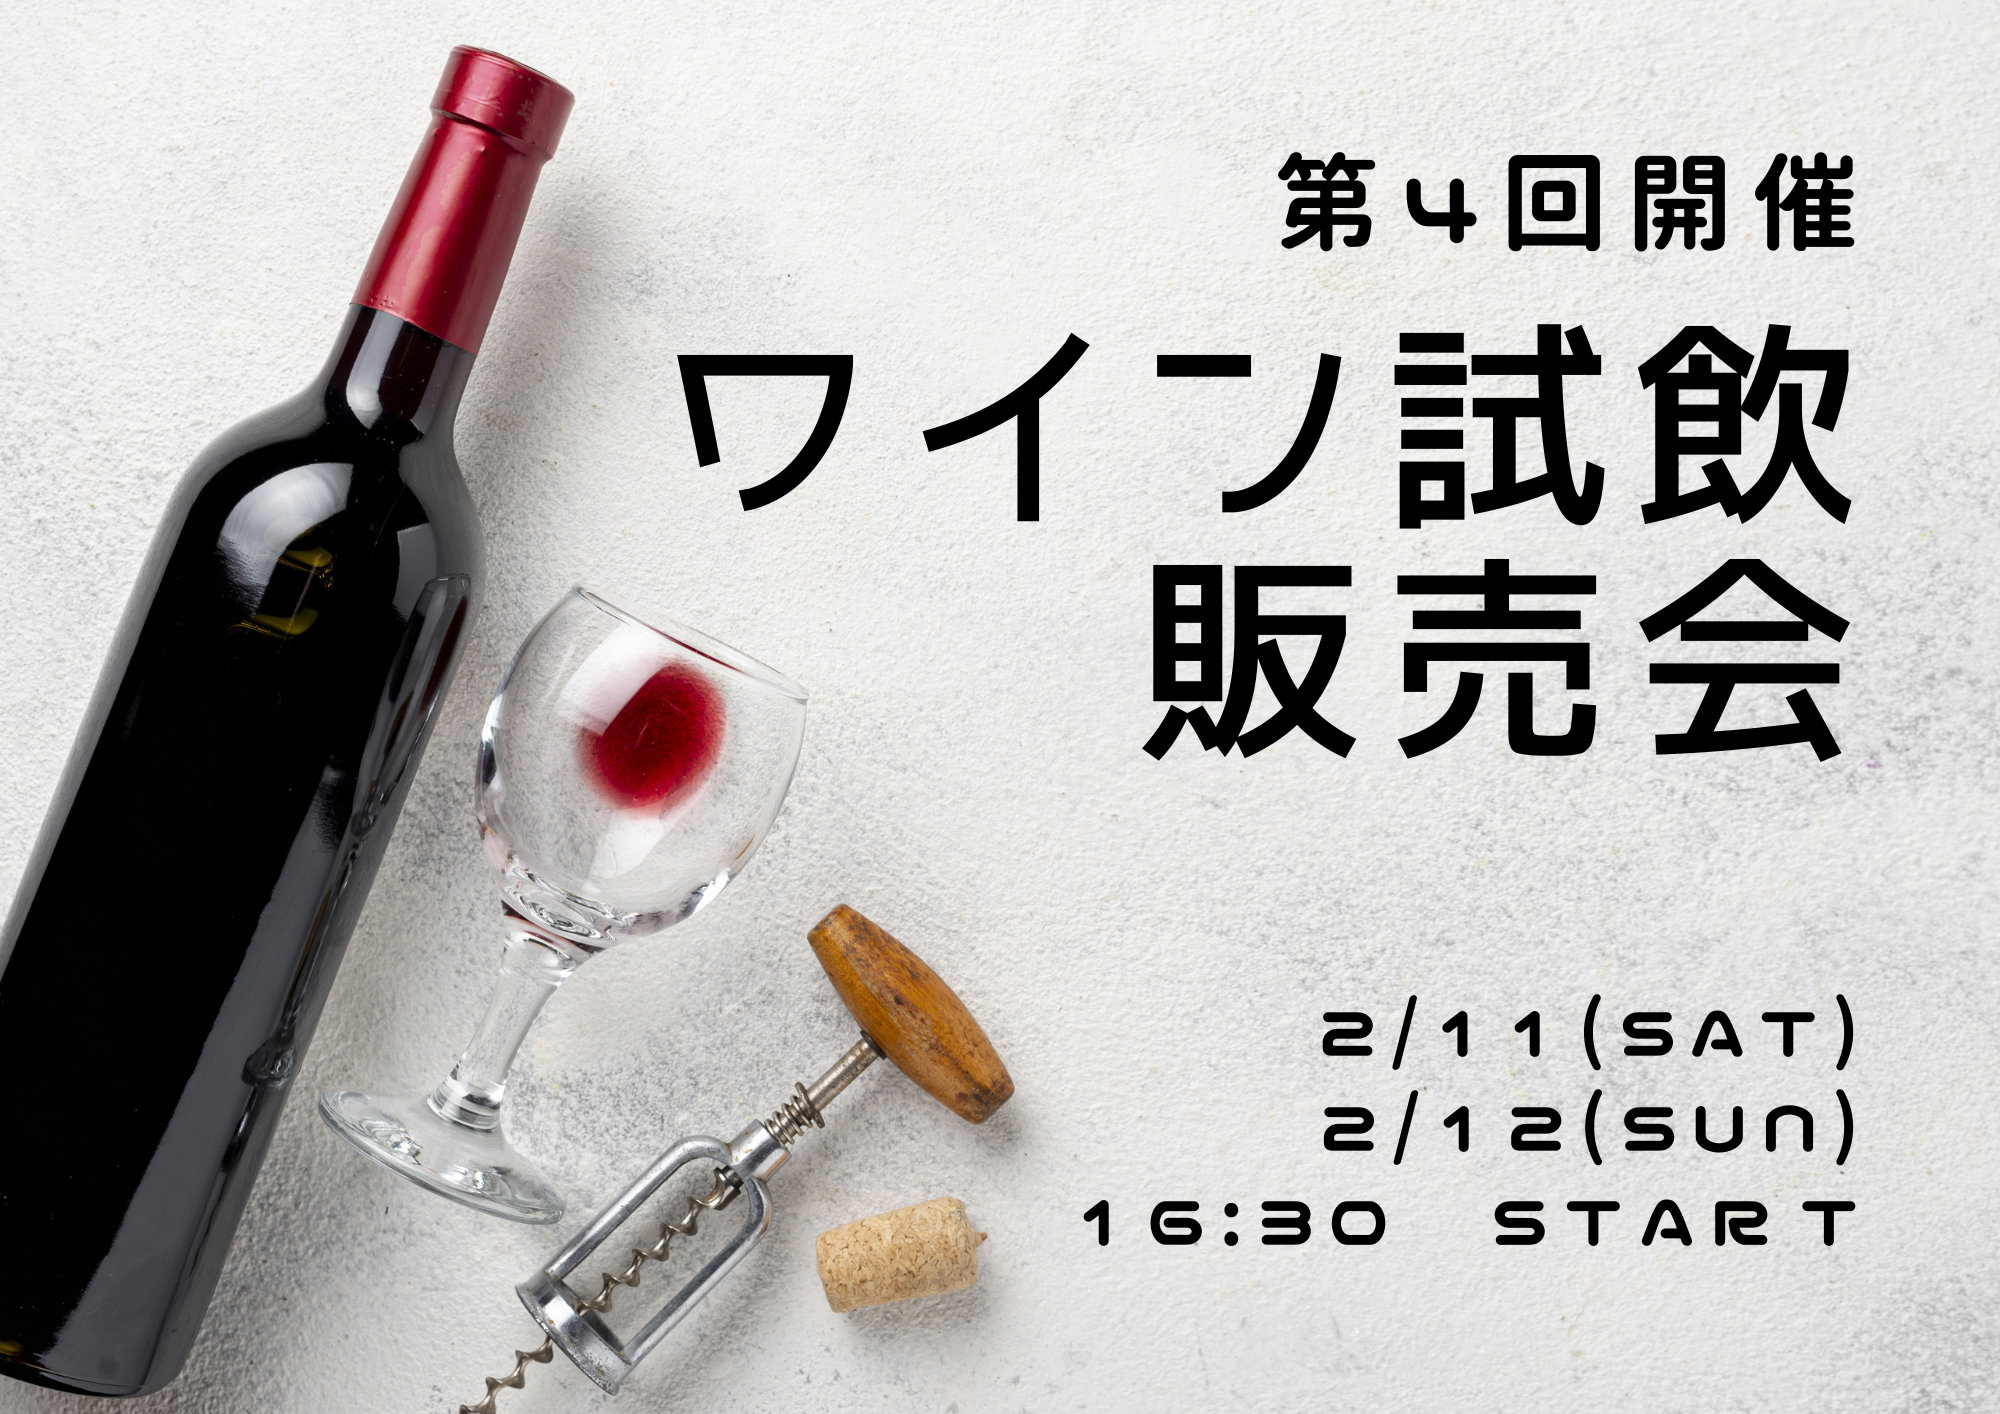 【イベント】第4回ワイン試飲販売会